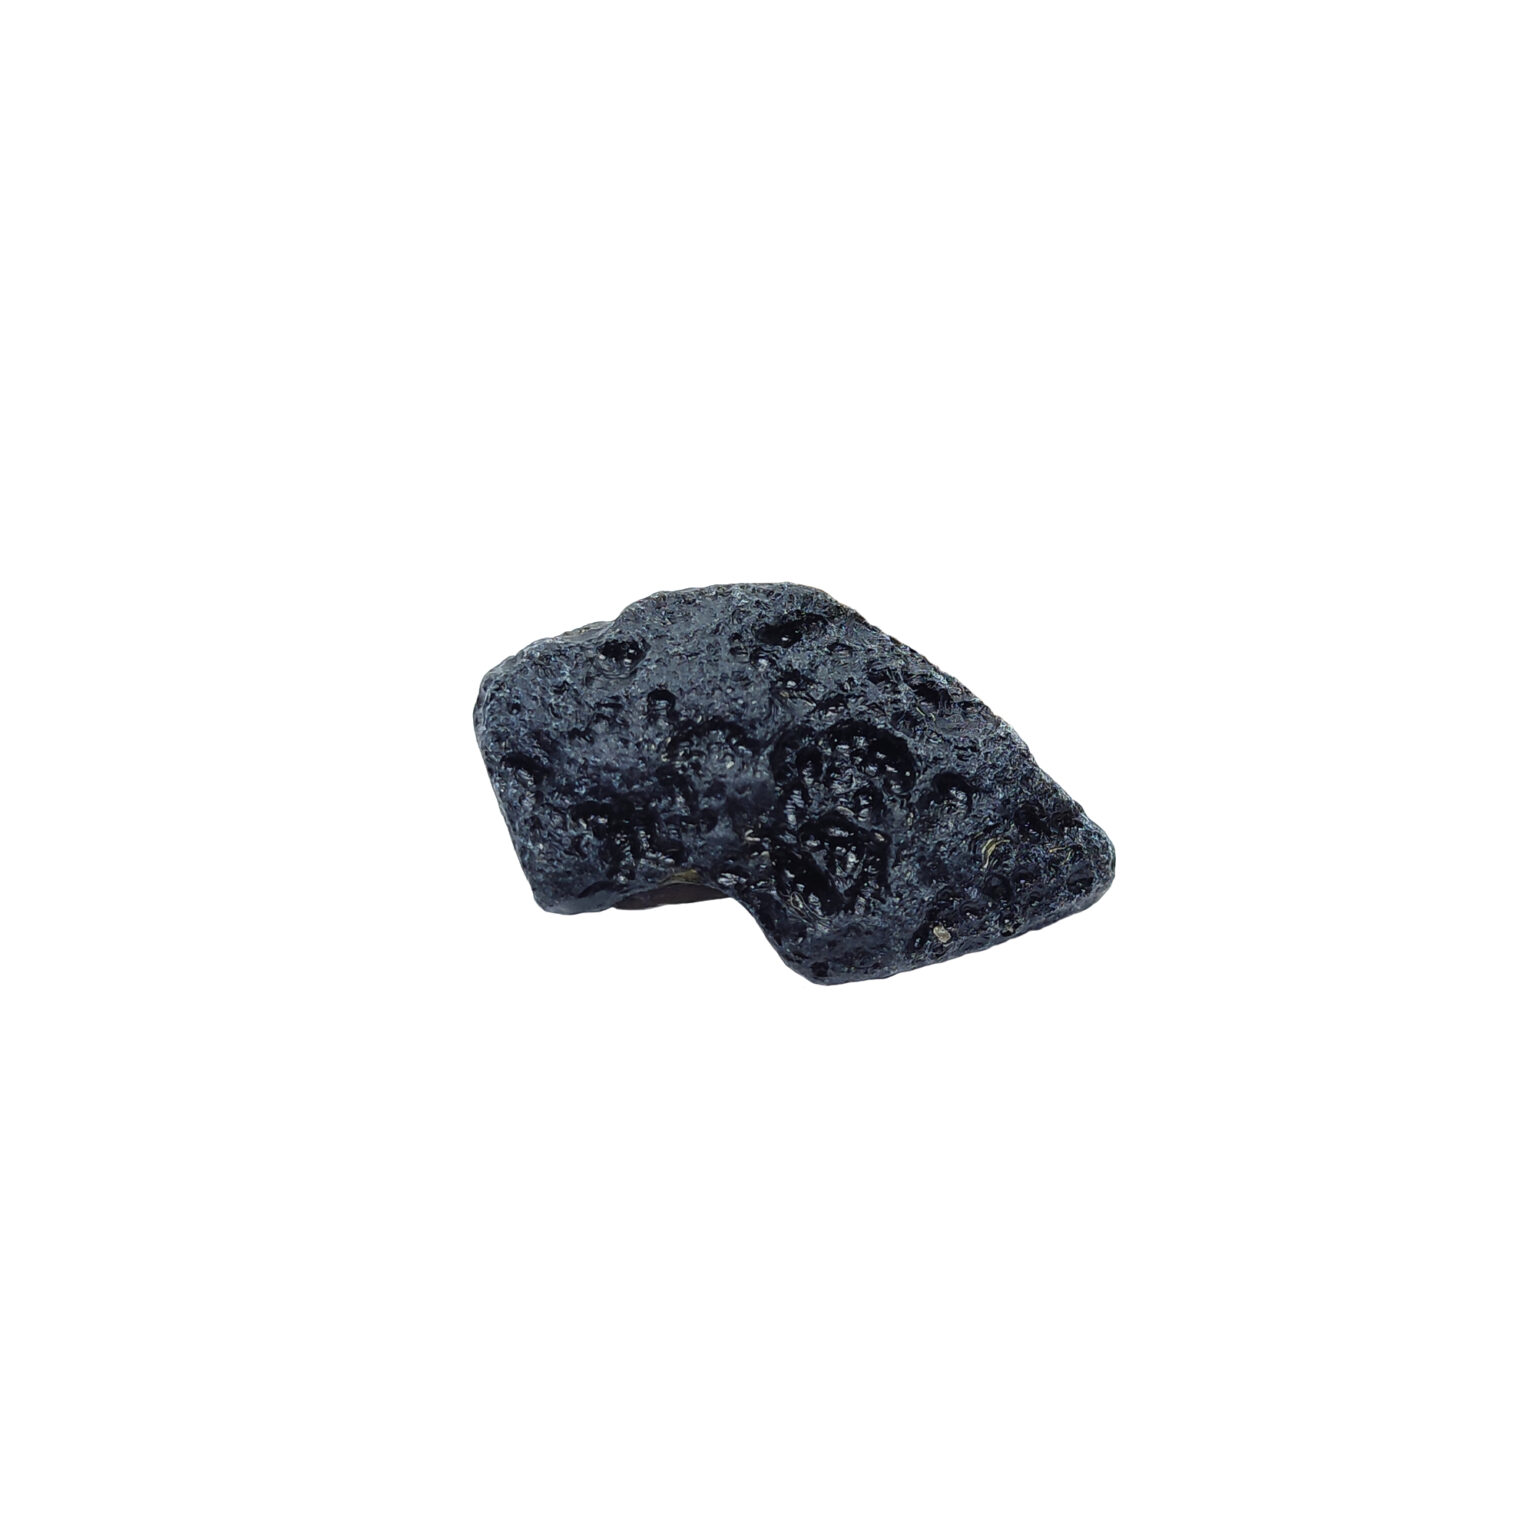 Intensiv strukturierter Tektit Meteorit in typischer rohen Form.